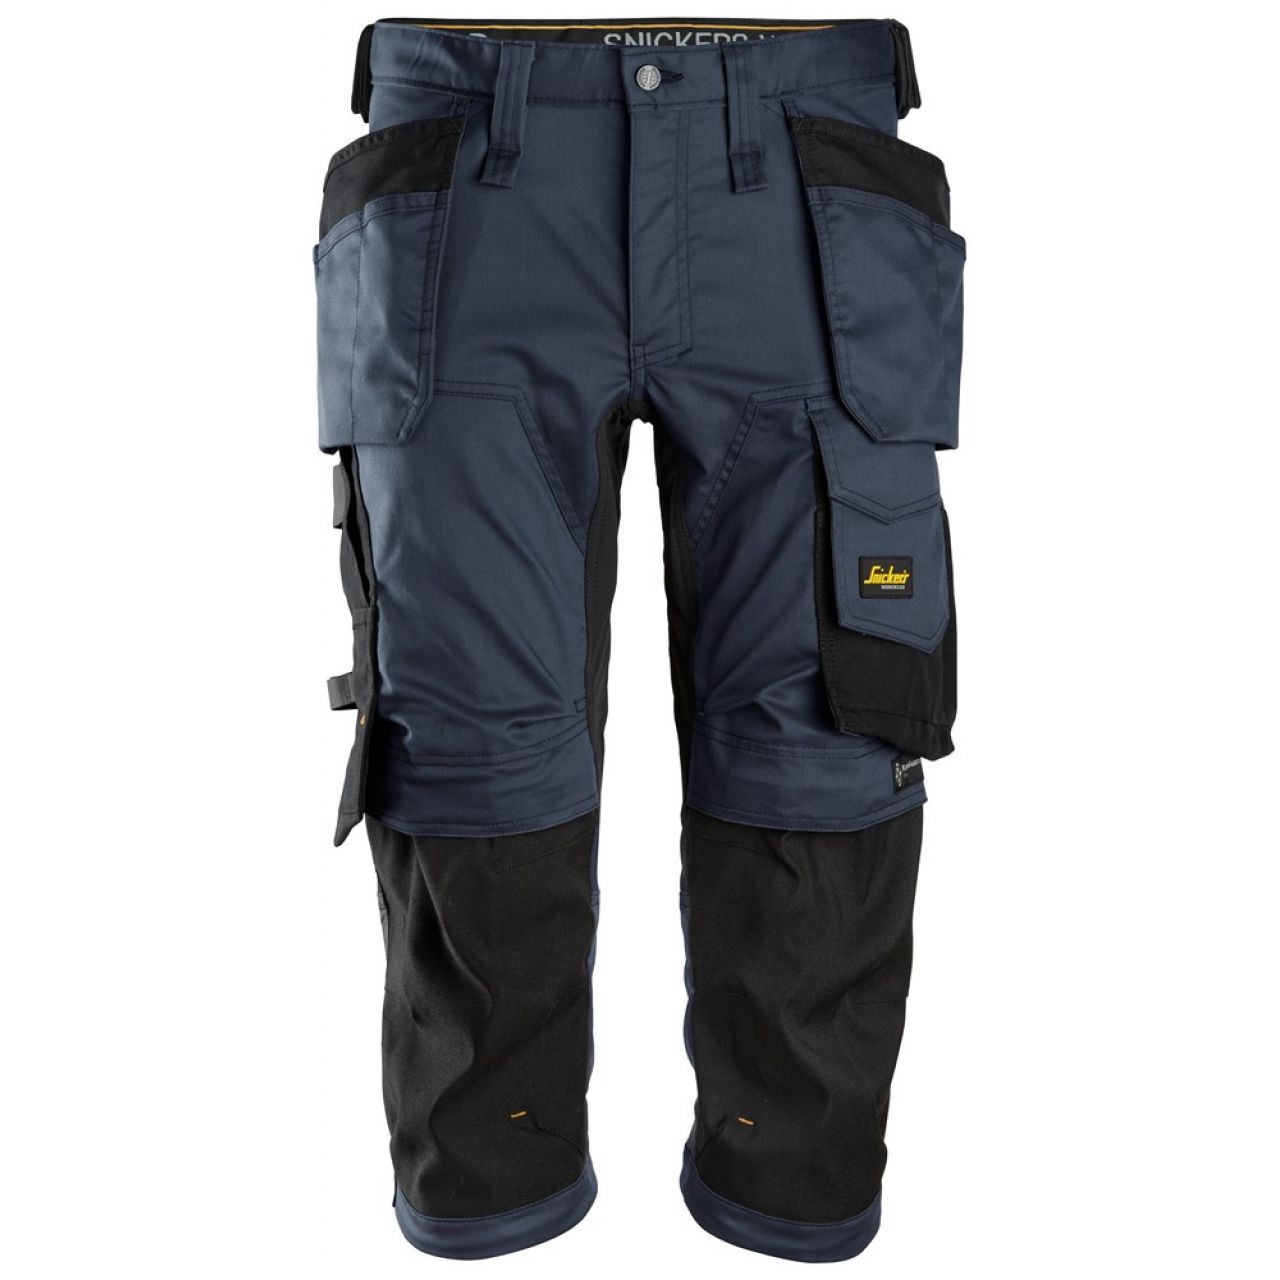 6142 Pantalones pirata de trabajo elasticos con bolsillos flotantes AllroundWork azul marino-negro talla 58